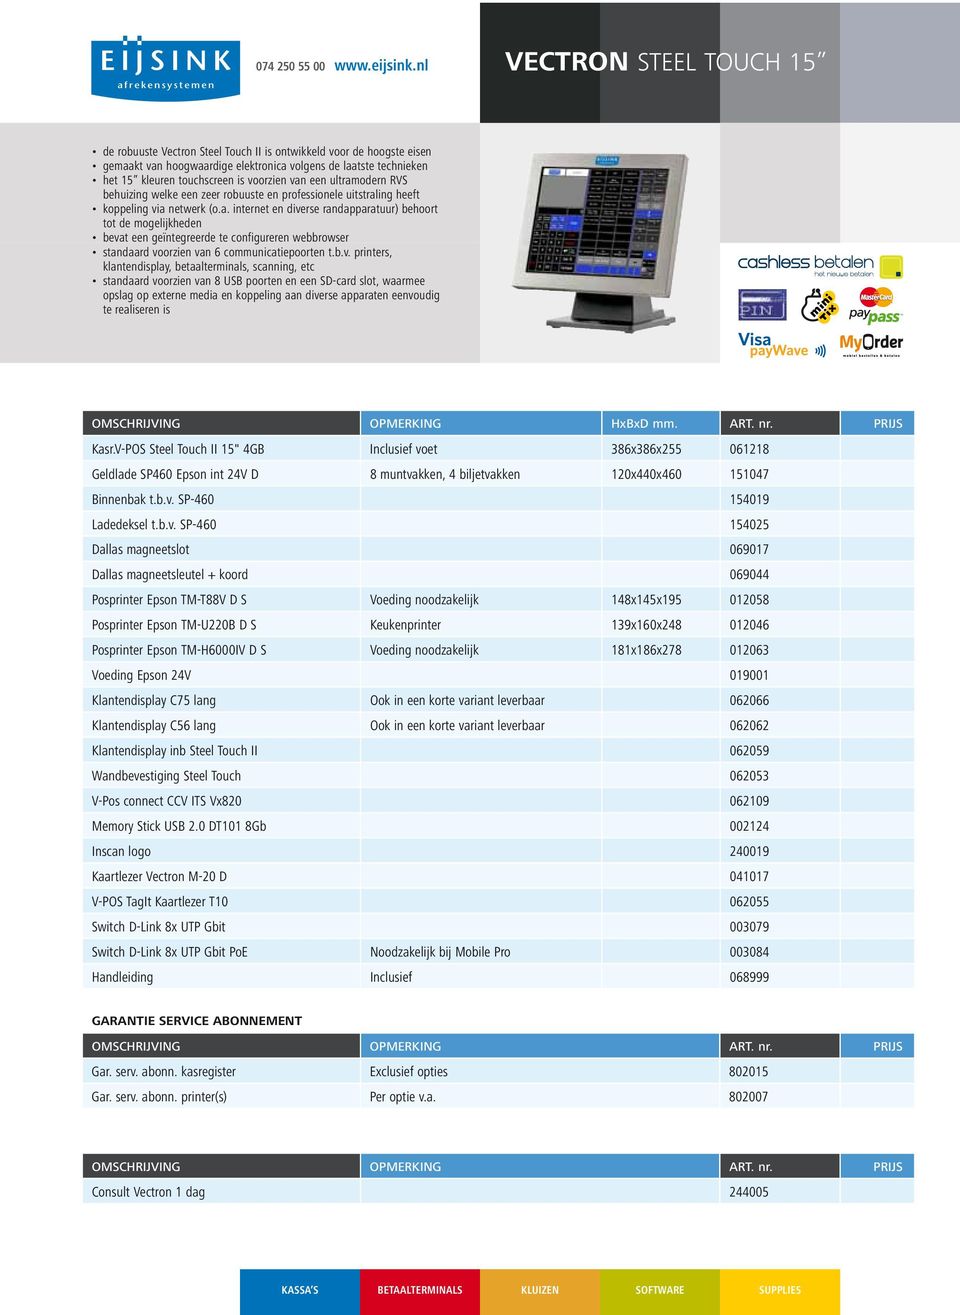 b.v. printers, klantendisplay, betaalterminals, scanning, etc standaard voorzien van 8 USB poorten en een SD-card slot, waarmee opslag op externe media en koppeling aan diverse apparaten eenvoudig te